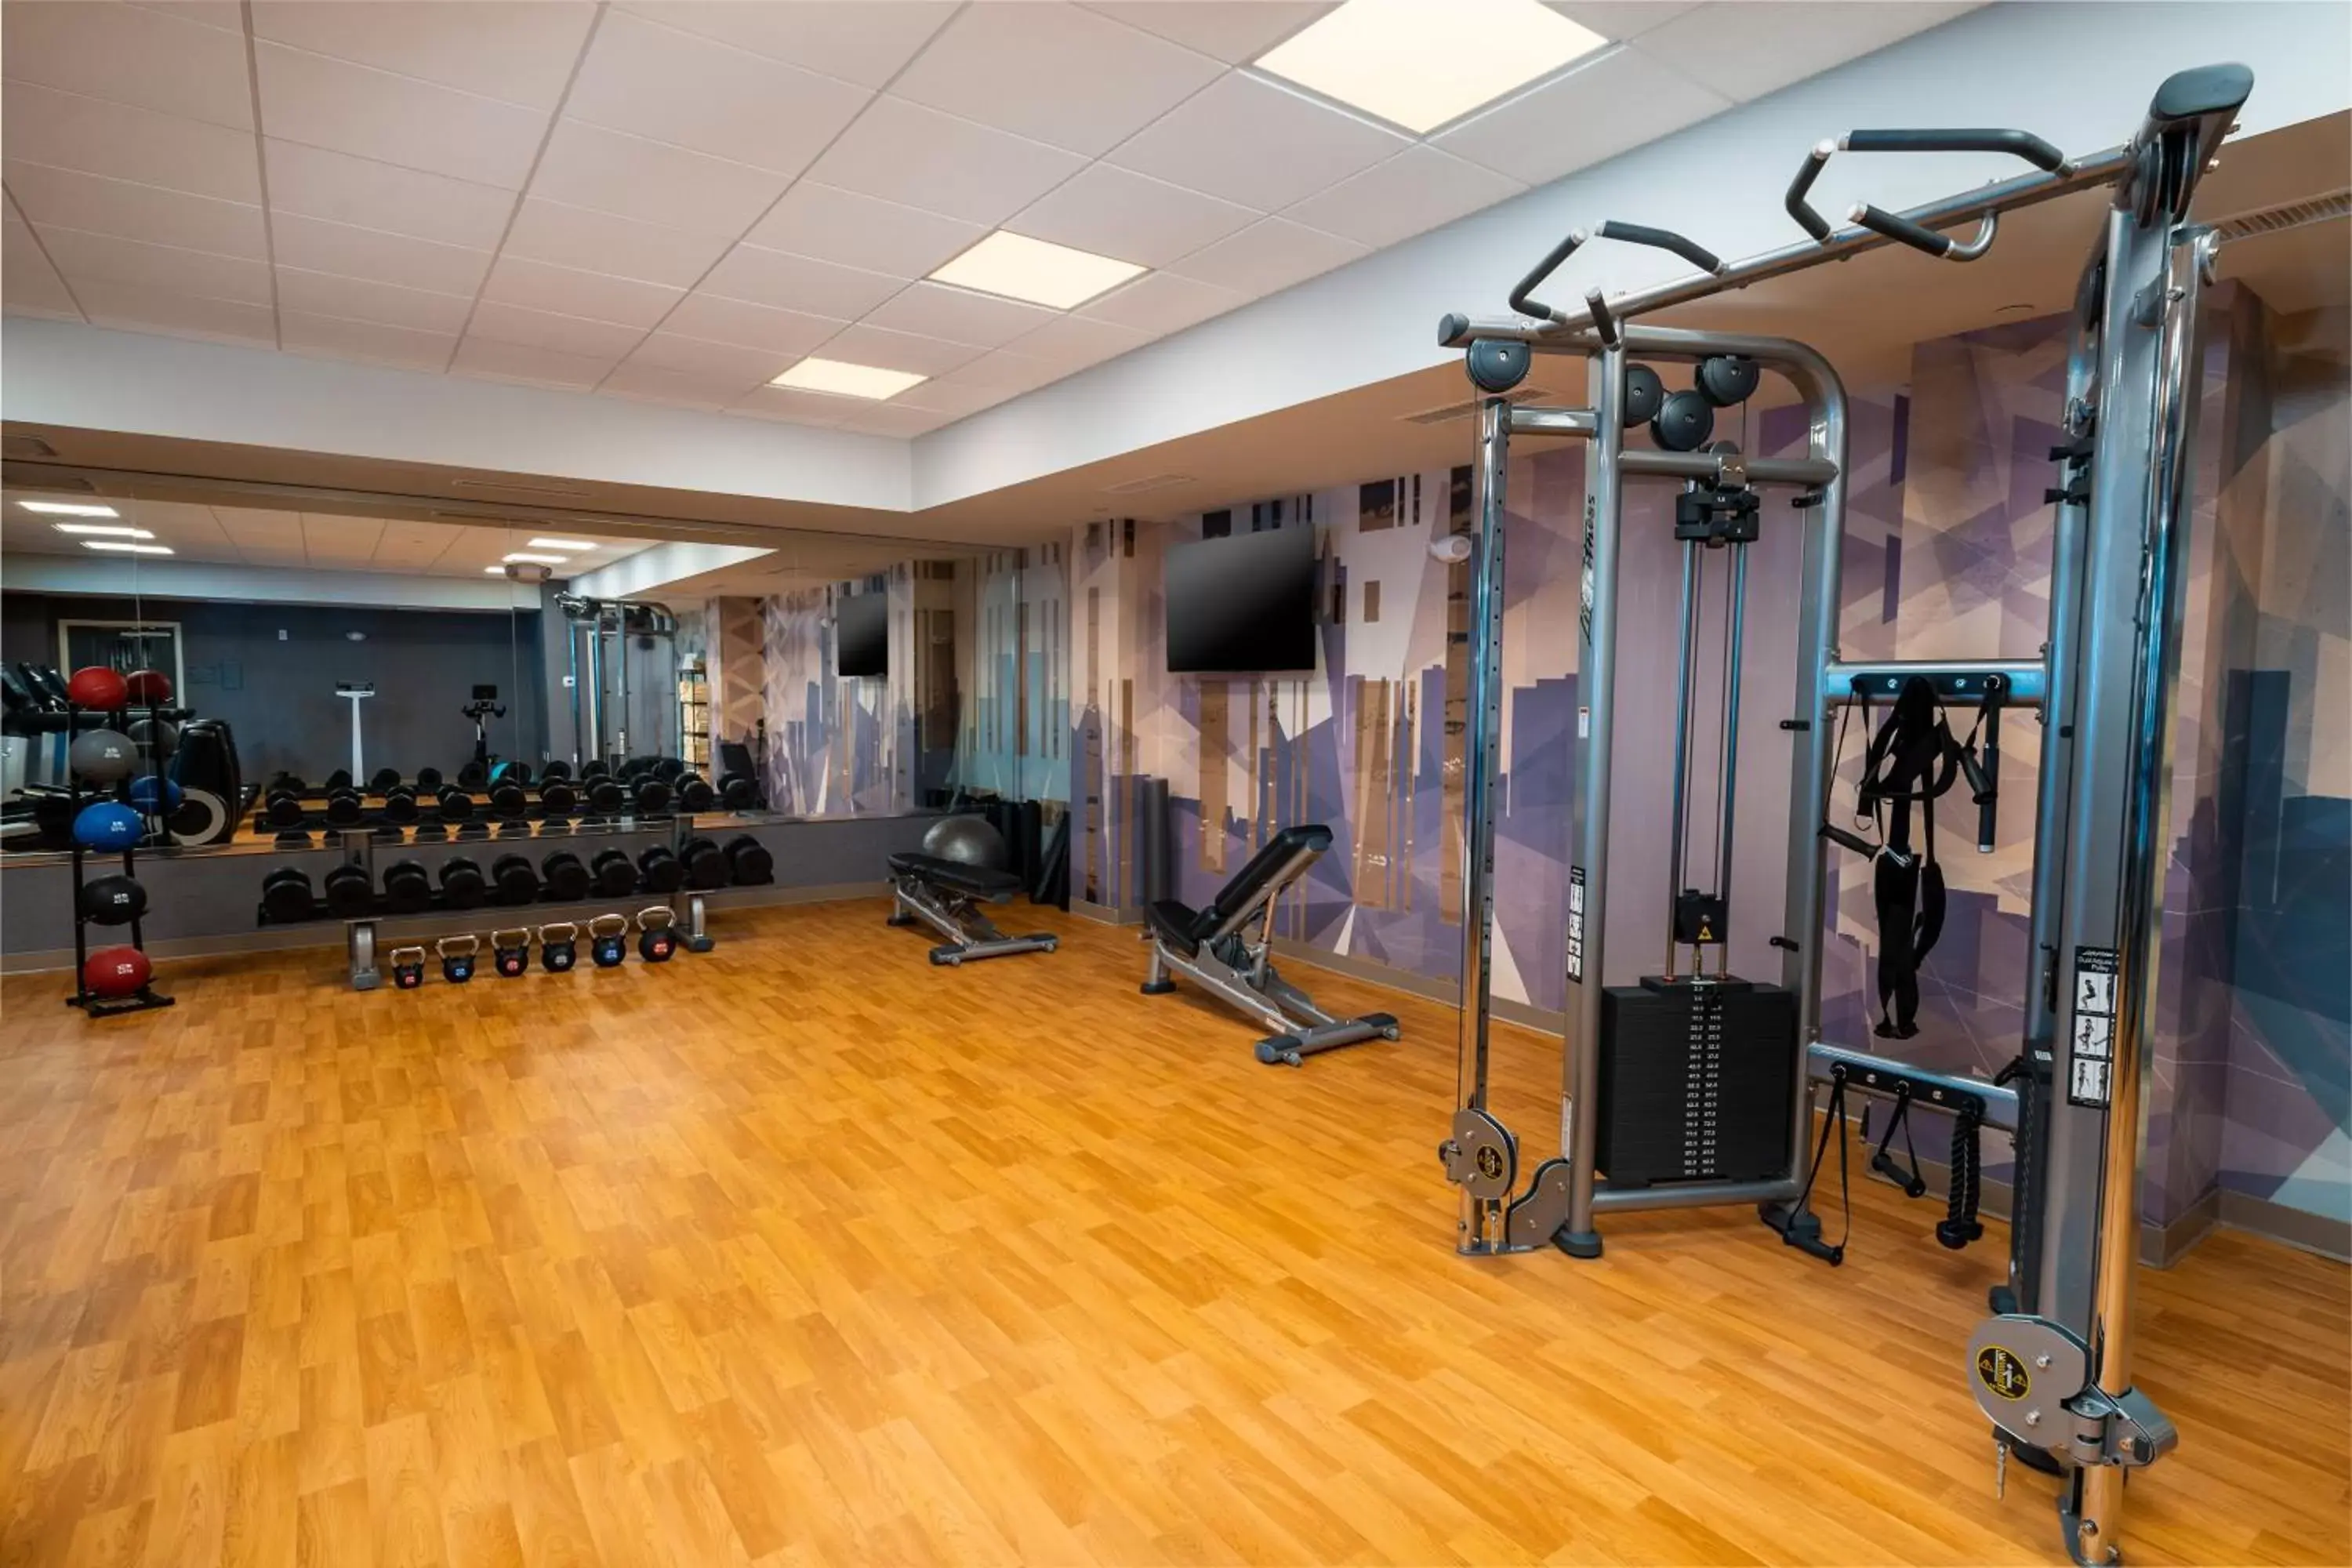 Fitness centre/facilities, Fitness Center/Facilities in Hyatt House Nashville/Franklin/Cool Springs